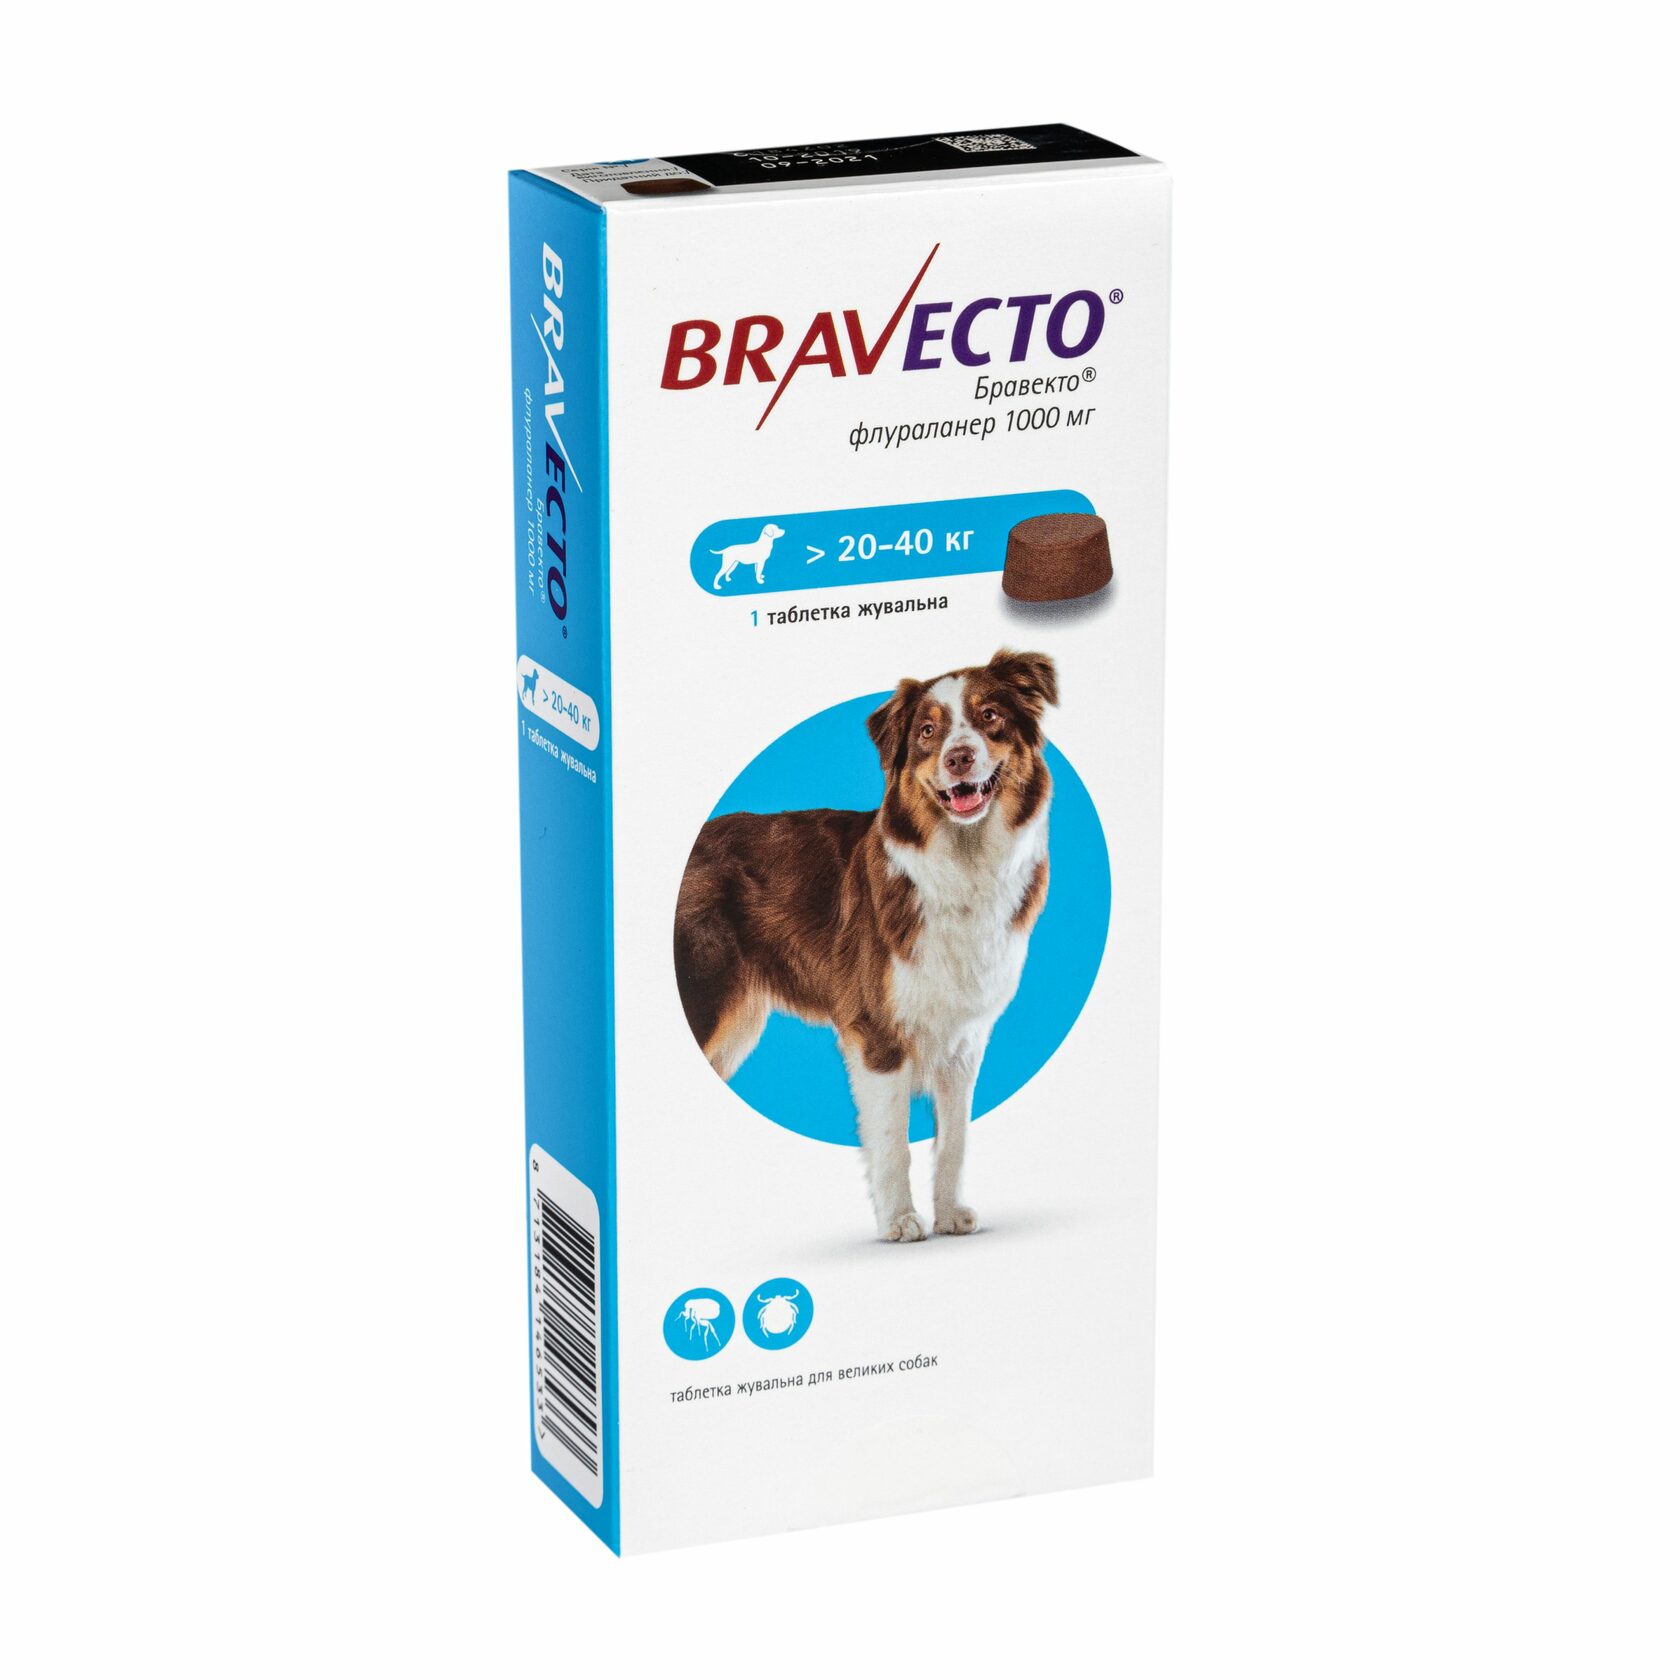 Бравекто для собак оригинал. Бравекто (MSD animal Health). Таблетки клещей для собак Бравекто. Бравекто для собак 20-40. Бравекто для собак 20-40 кг 1000 мг.